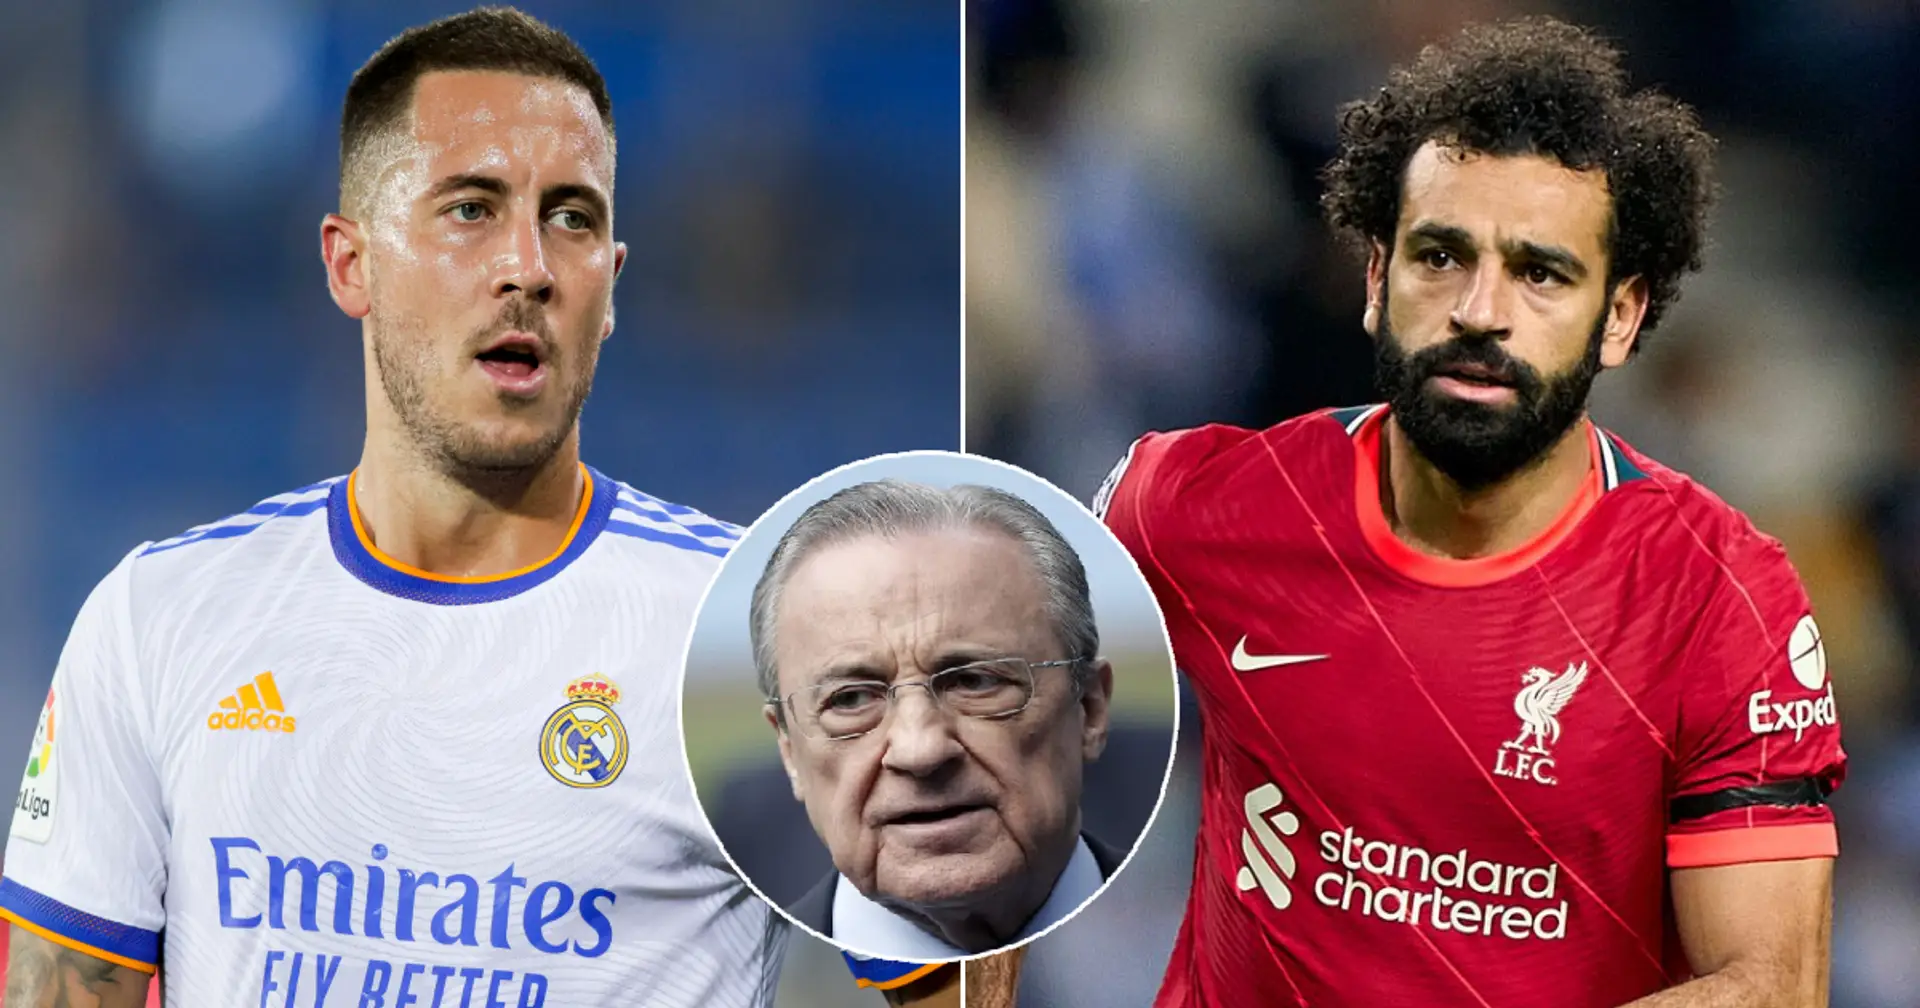 El Real Madrid está dispuesto a ofrecer a Hazard y dinero por Salah (fiabilidad: 4 estrellas)